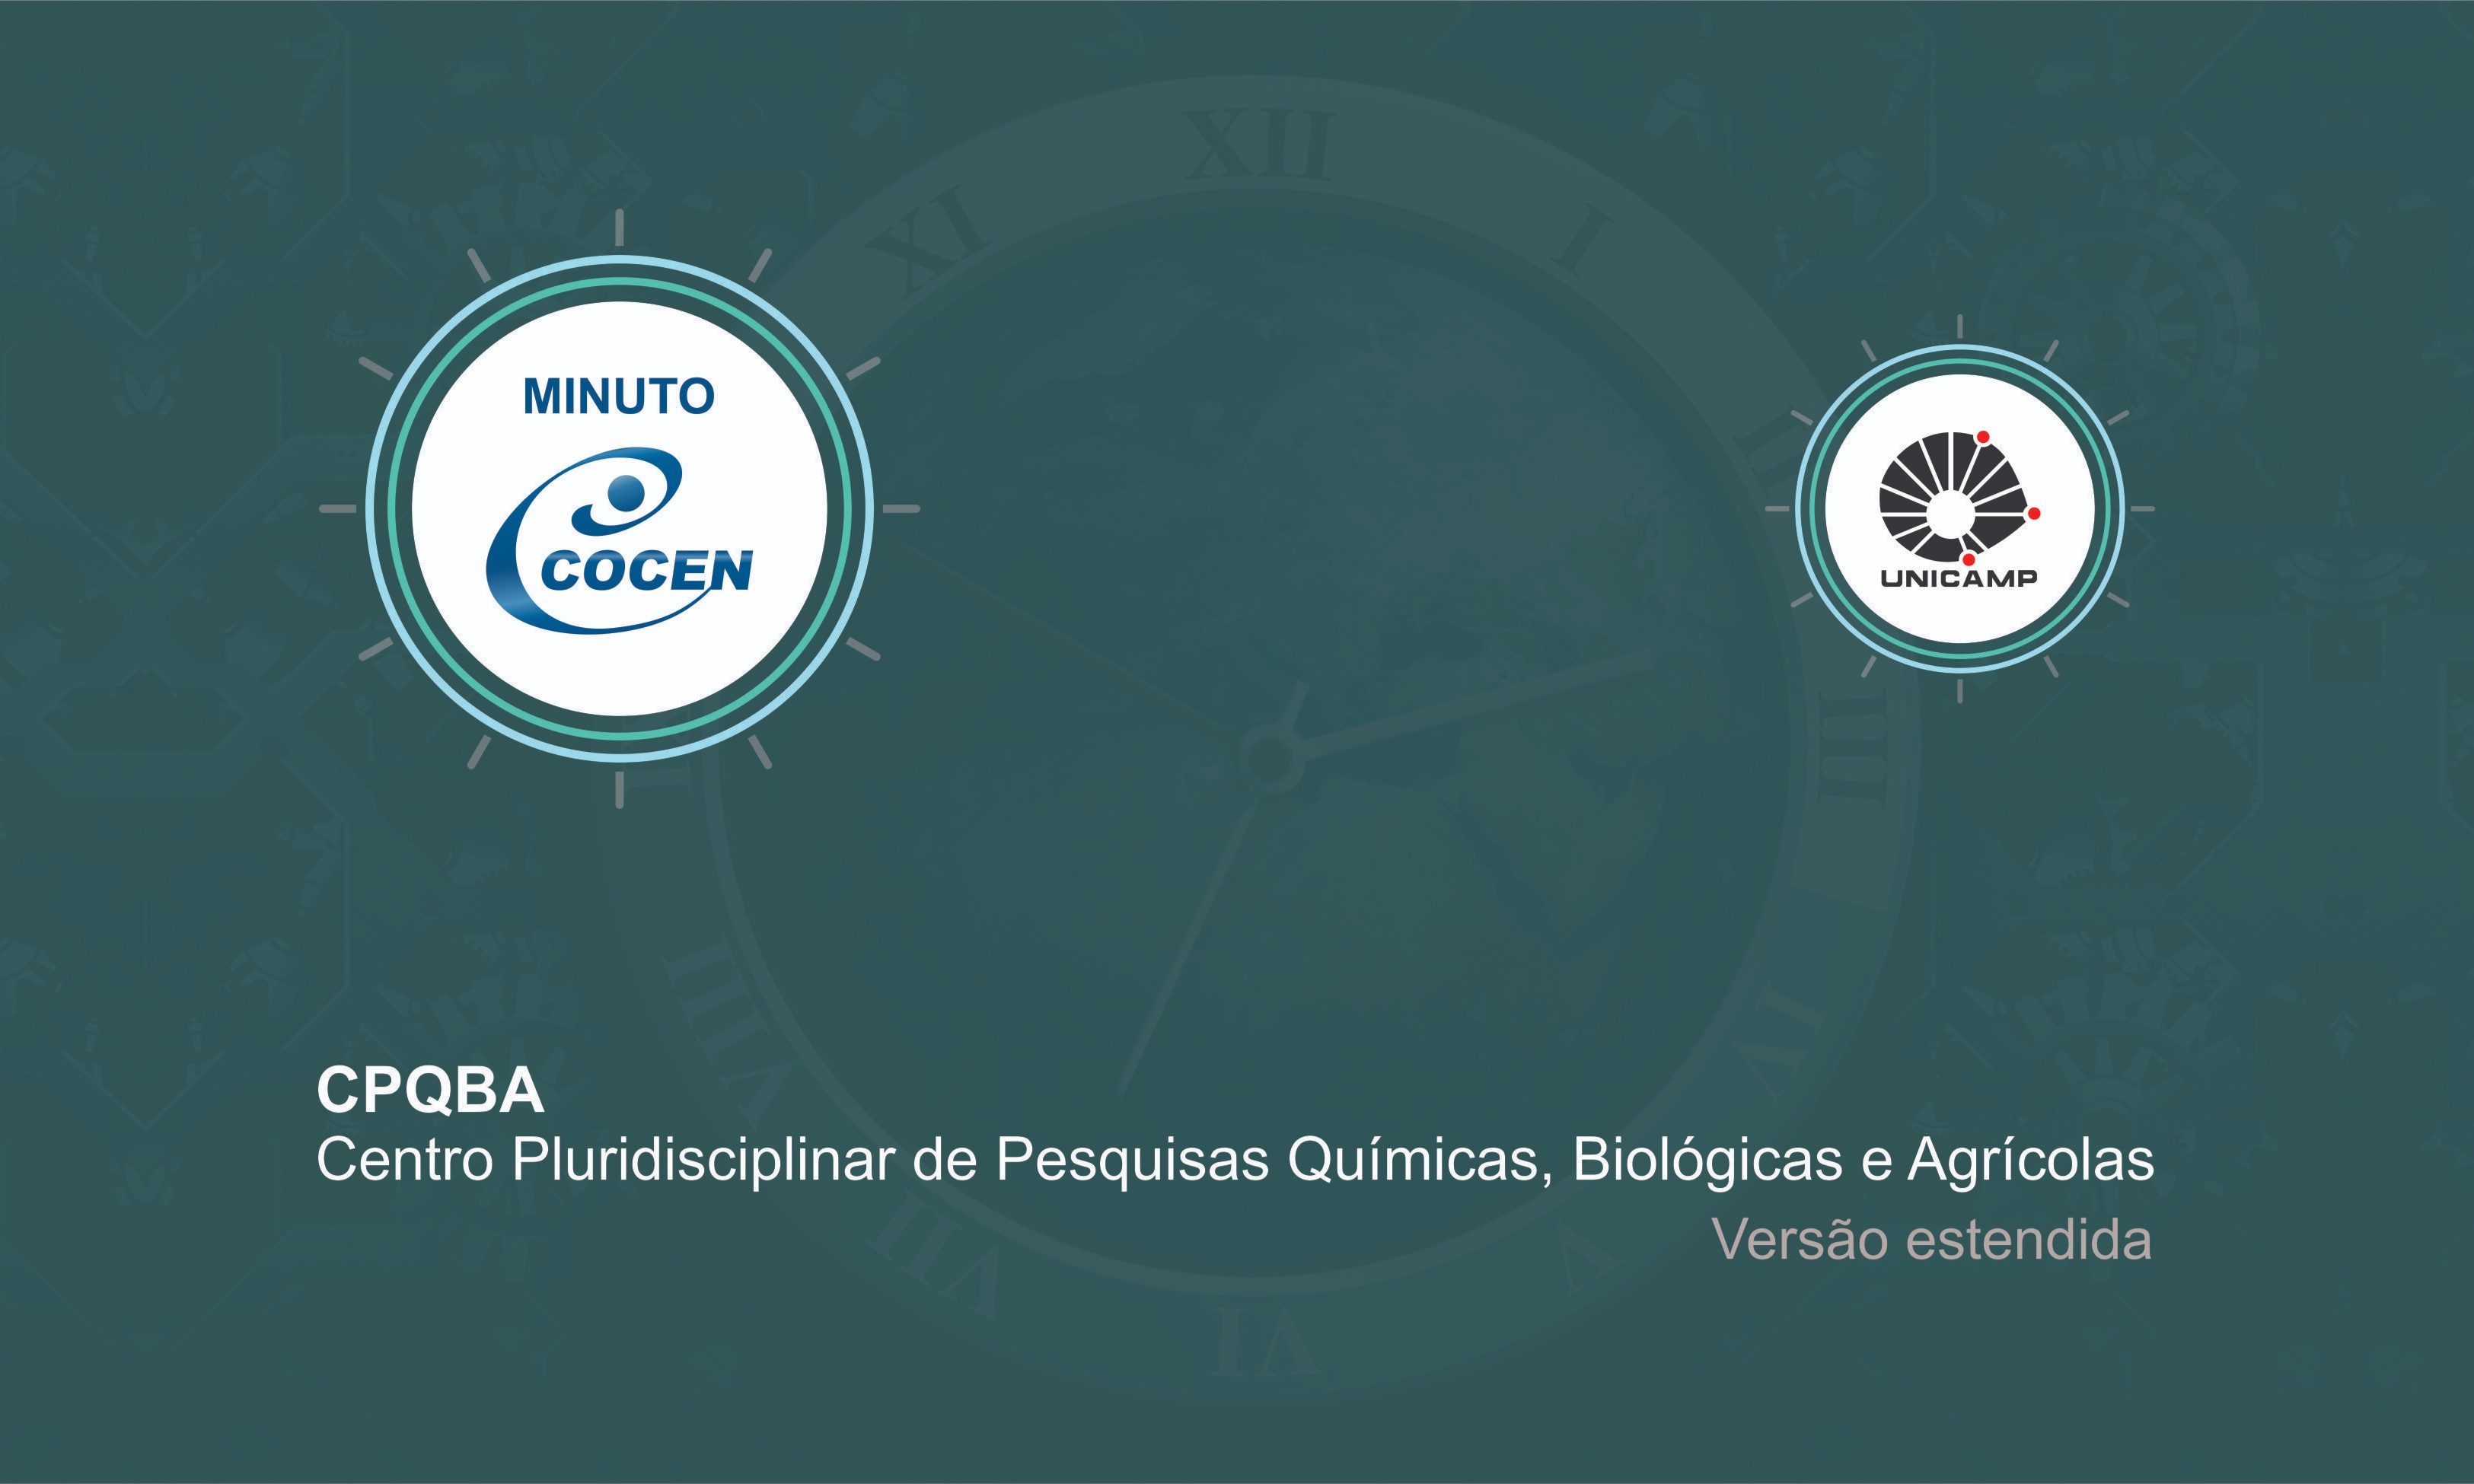 Imagem vídeo: CPQBA - Centro Pluridisciplinar de Pesquisas Químicas, Biológicas e Agrícolas (versão estendida)